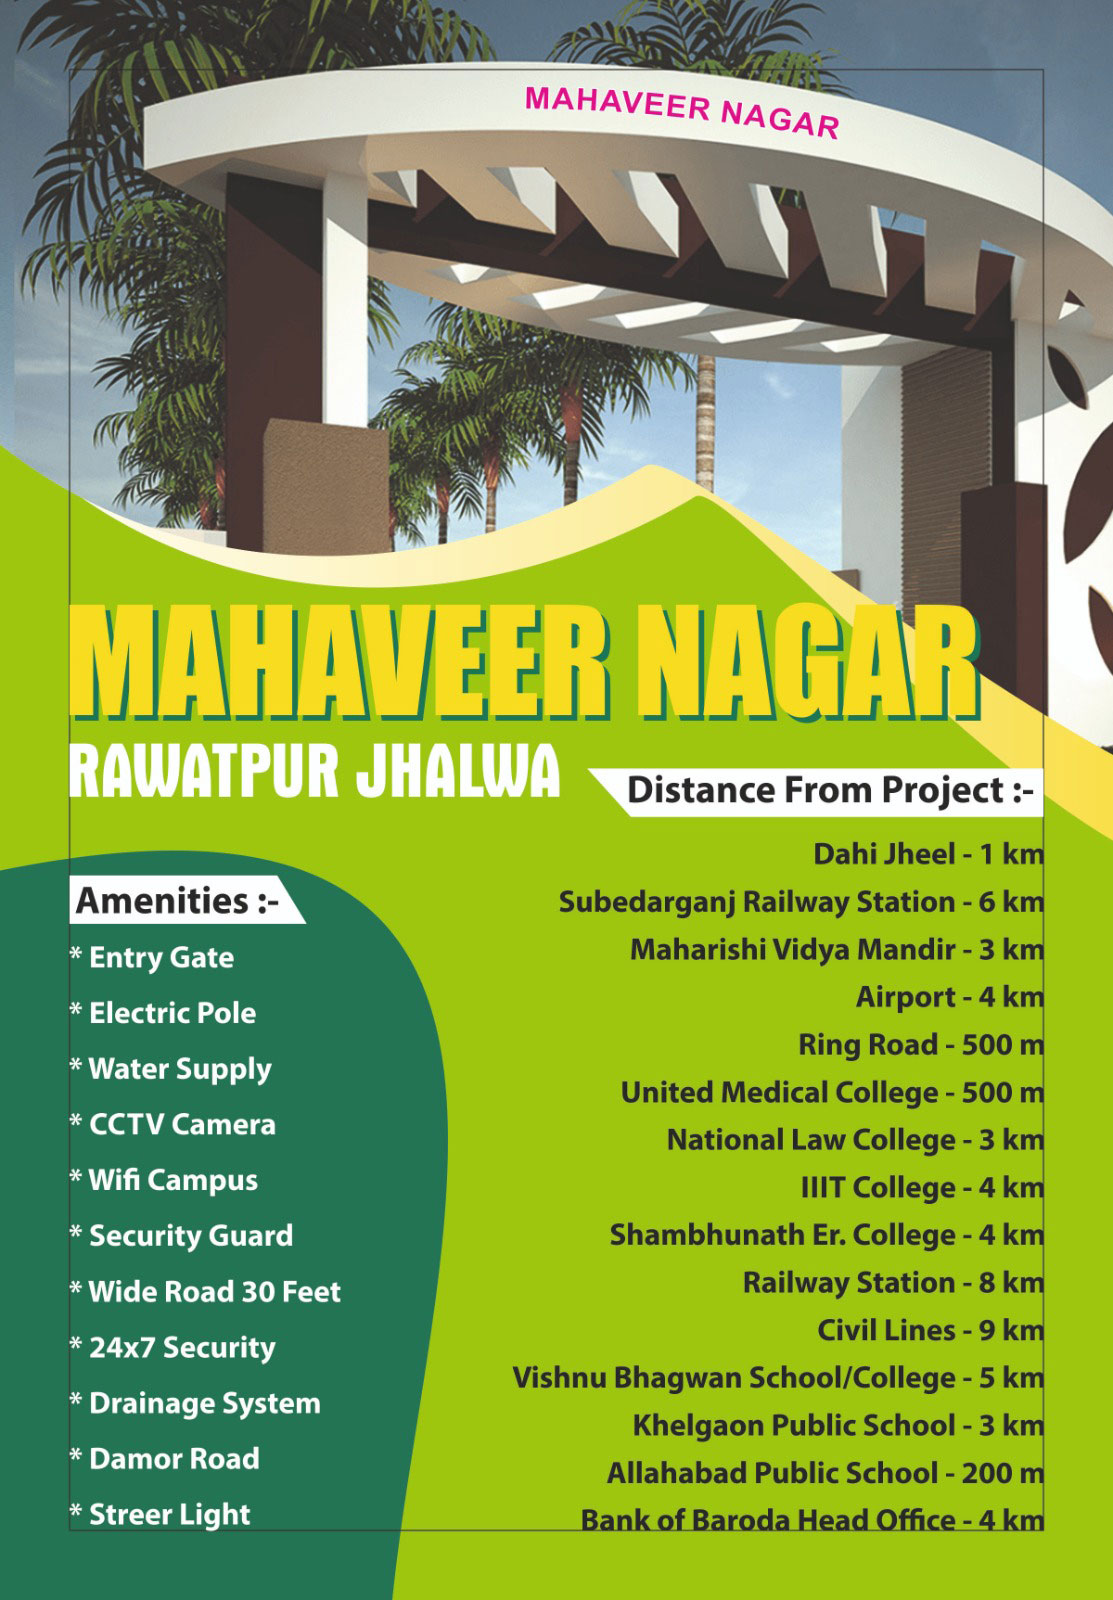 Mahaveer Nagar